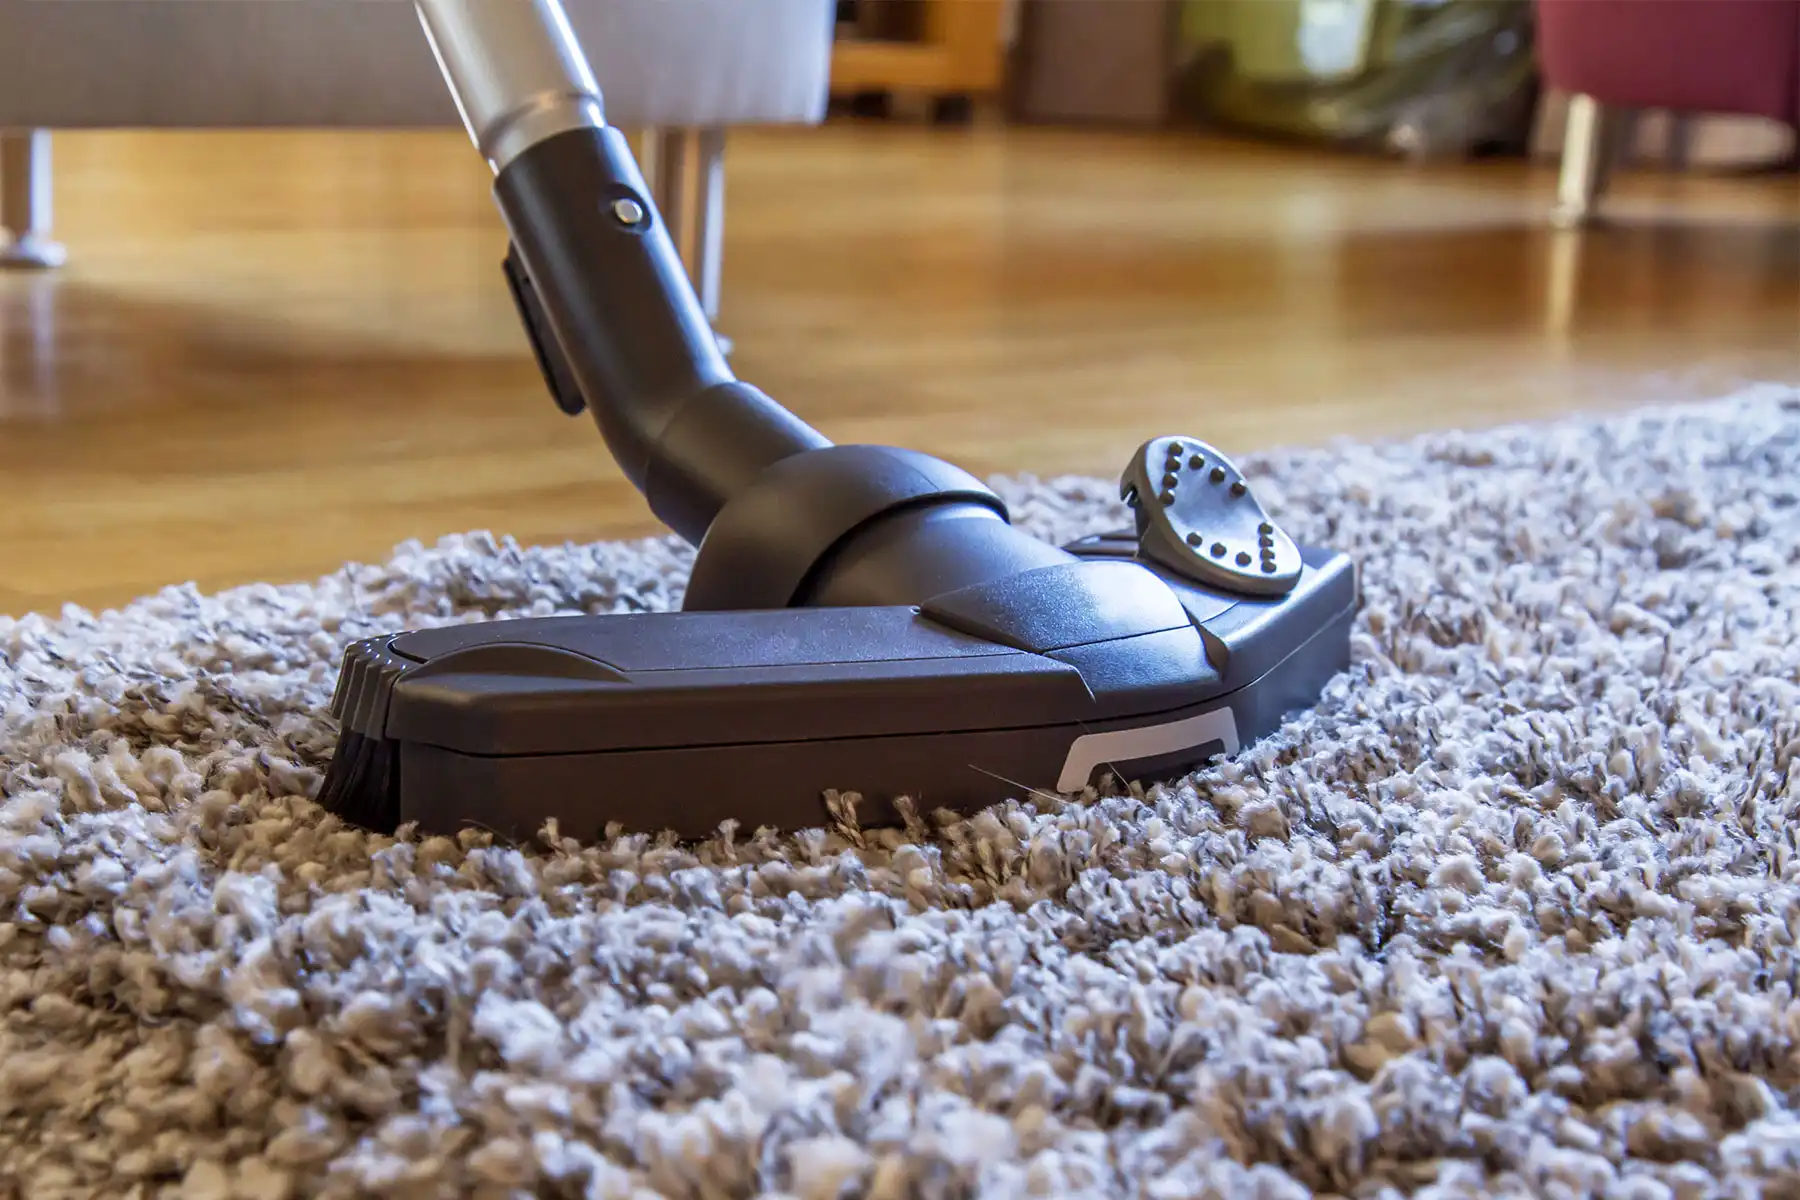 photo of vacuum cleaner